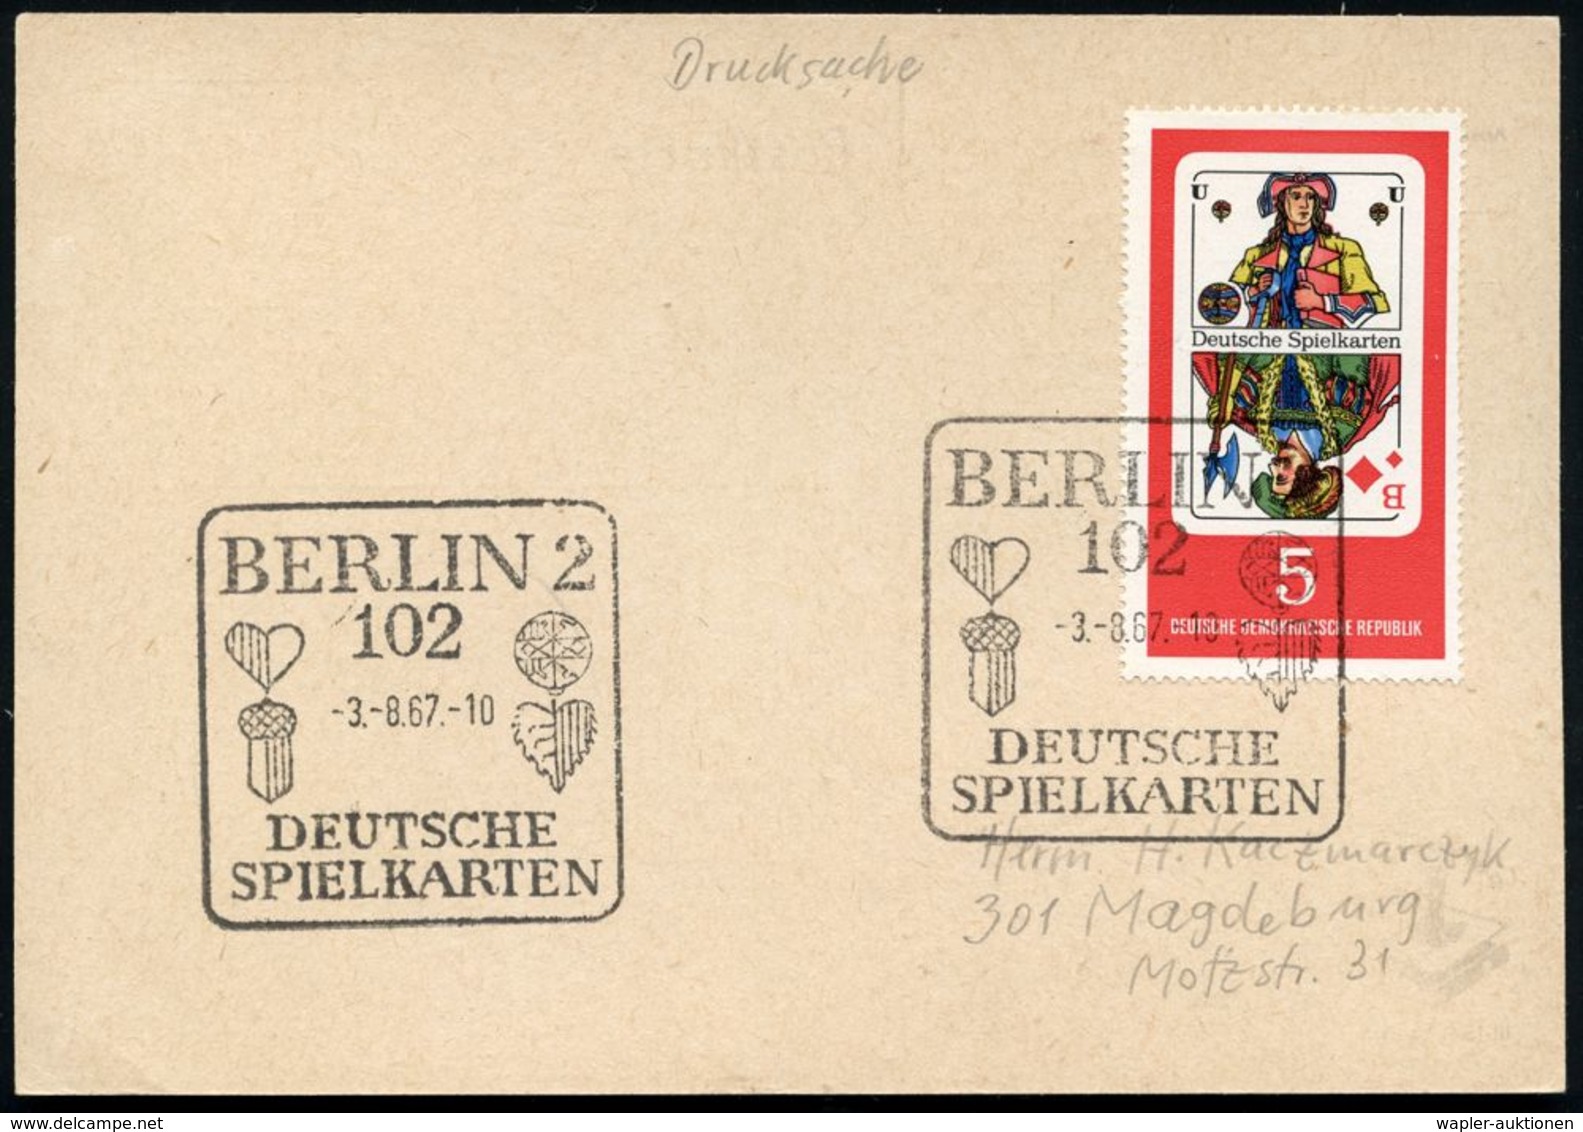 102 BERLIN 2/ DEUTSCHE/ SPIELKARTEN 1967 (3.8.) SSt = Deutsche Spielkarten-Symbole Auf EF 5 Pf. "Deutsche Spielkarten" , - Non Classés